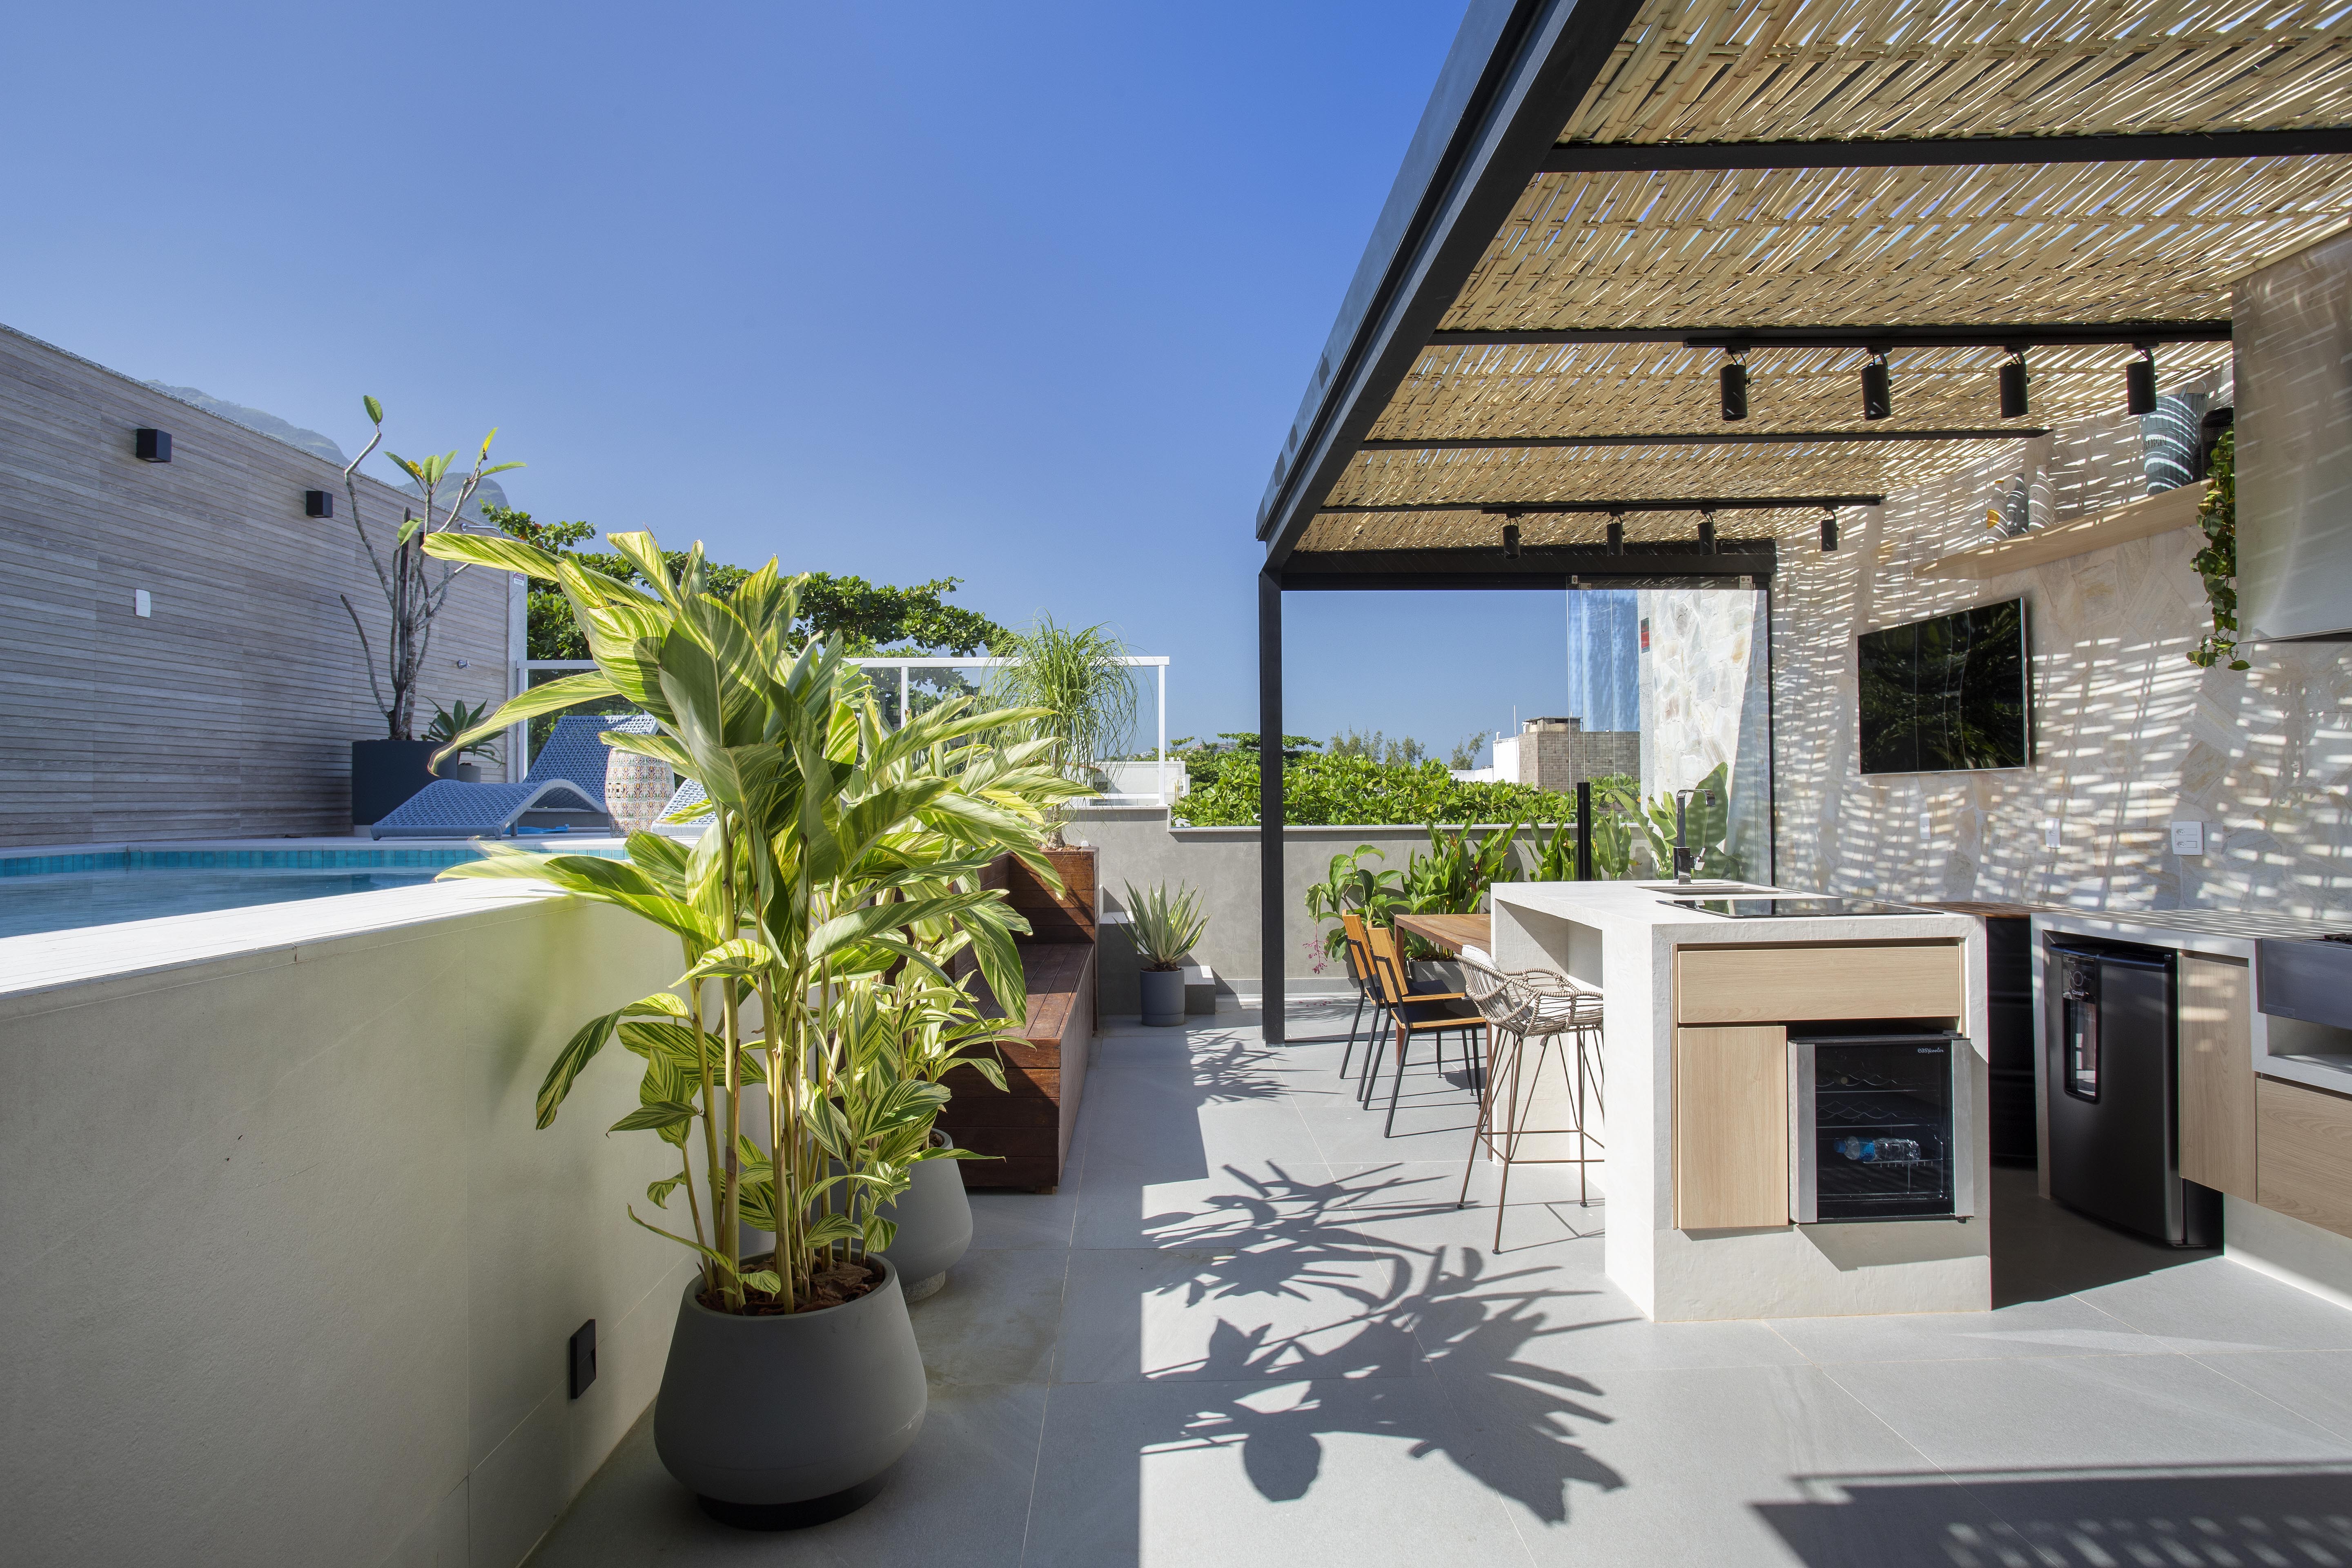 Cobertura duplex de 280 m² ganha estilo atemporal e contemporâneo